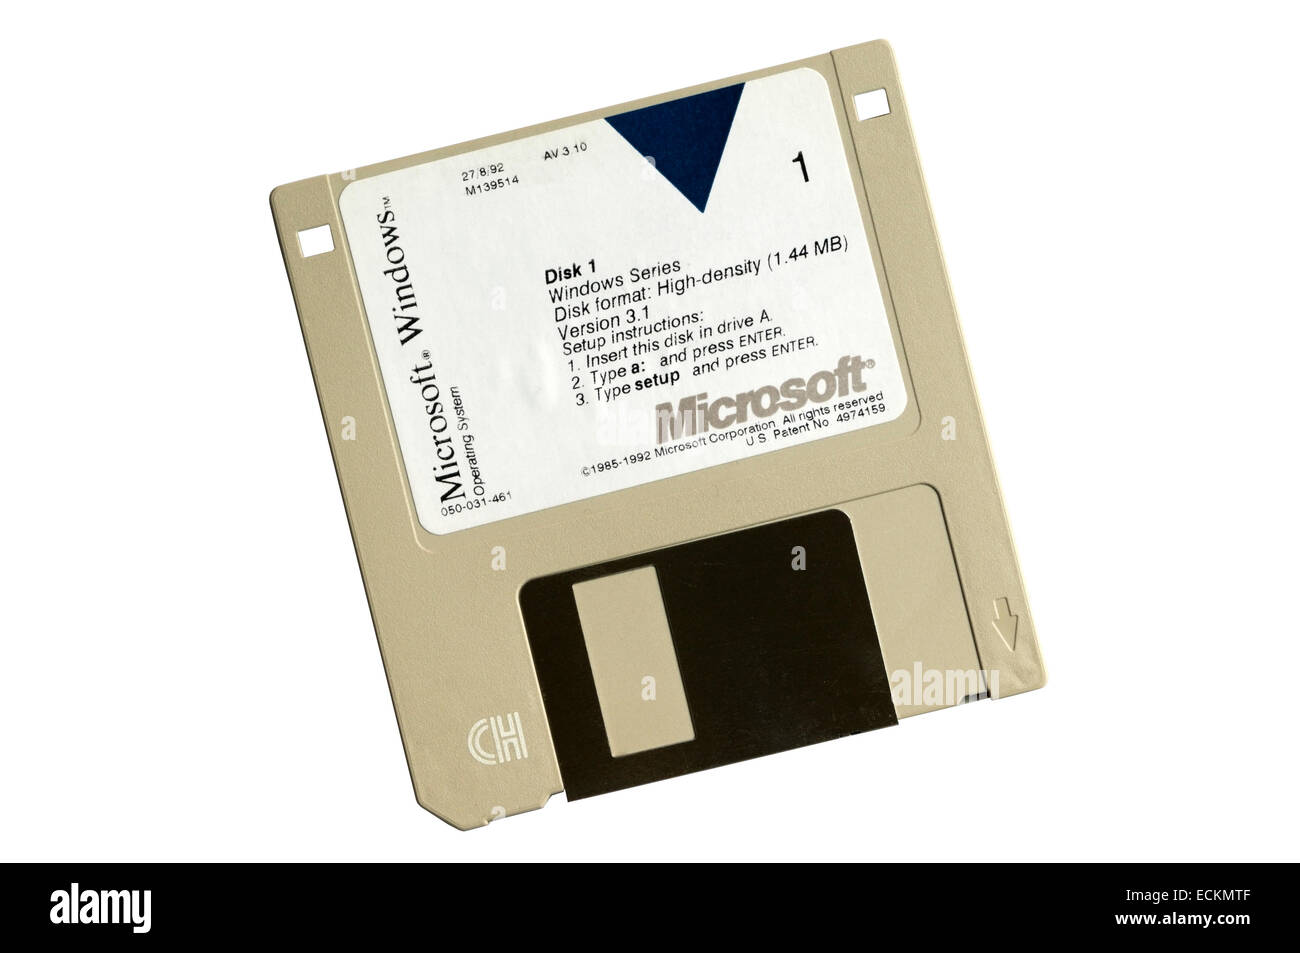 Ein Betriebssystem Microsoft Windows Version 3.1-Installation oder Setup-Diskette. Stockfoto